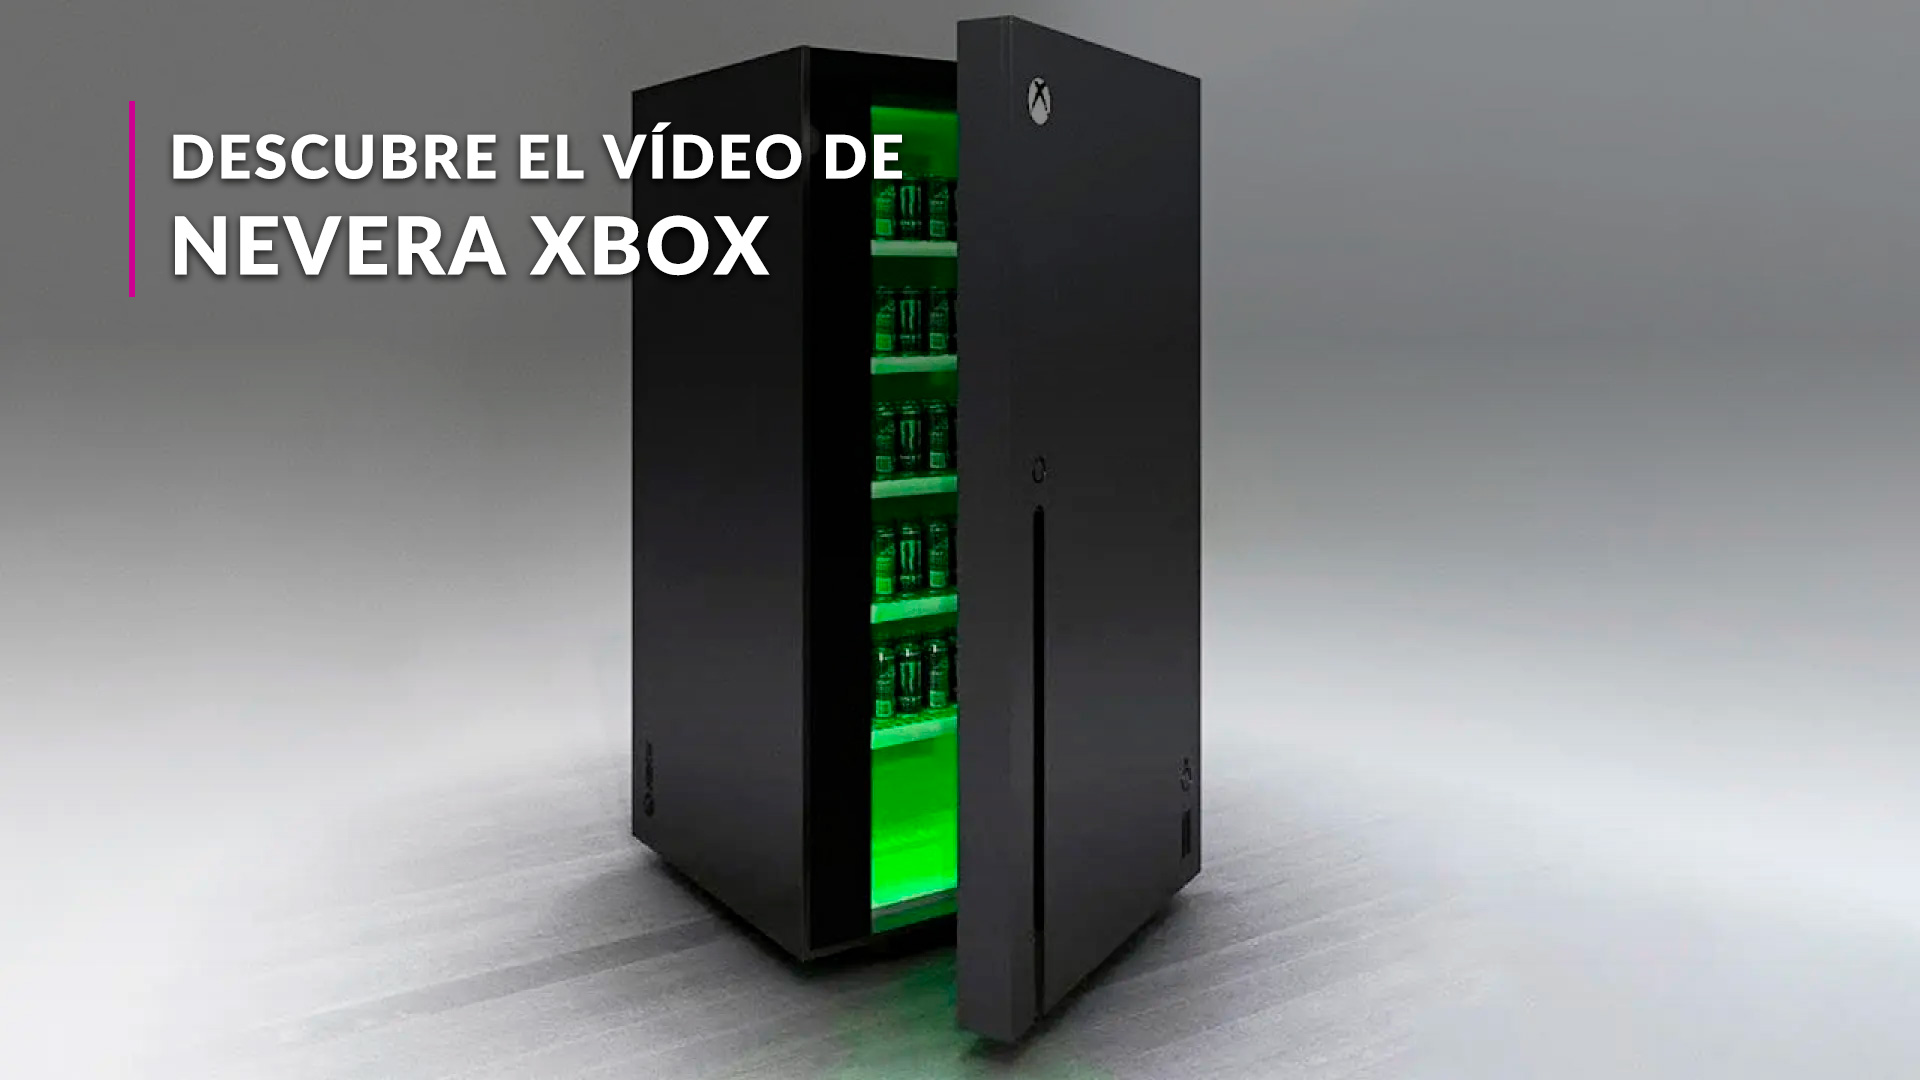 GAME España on X: ⚡ ¡Haz tu sueño realidad y móntate una cocina con  electrodomésticos de #Xbox! ⚡ 🟢 Ya puedes reservar en GAME, de forma  exclusiva: ➡️ Nevera XBOX 10L 👉